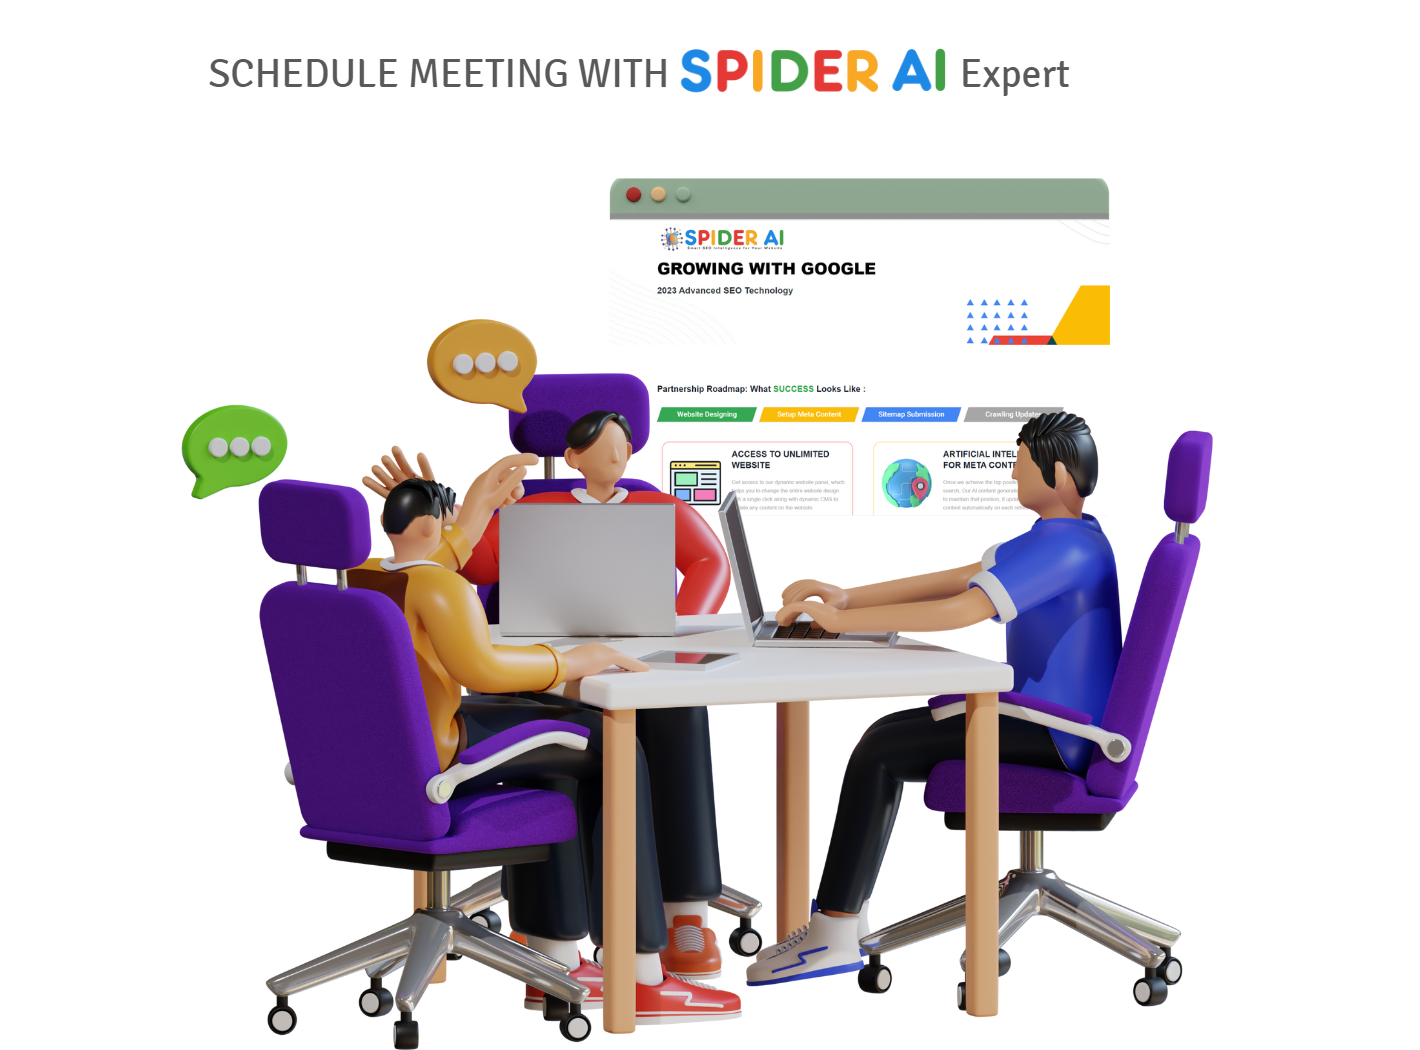 spider-ai-meeting-schedule